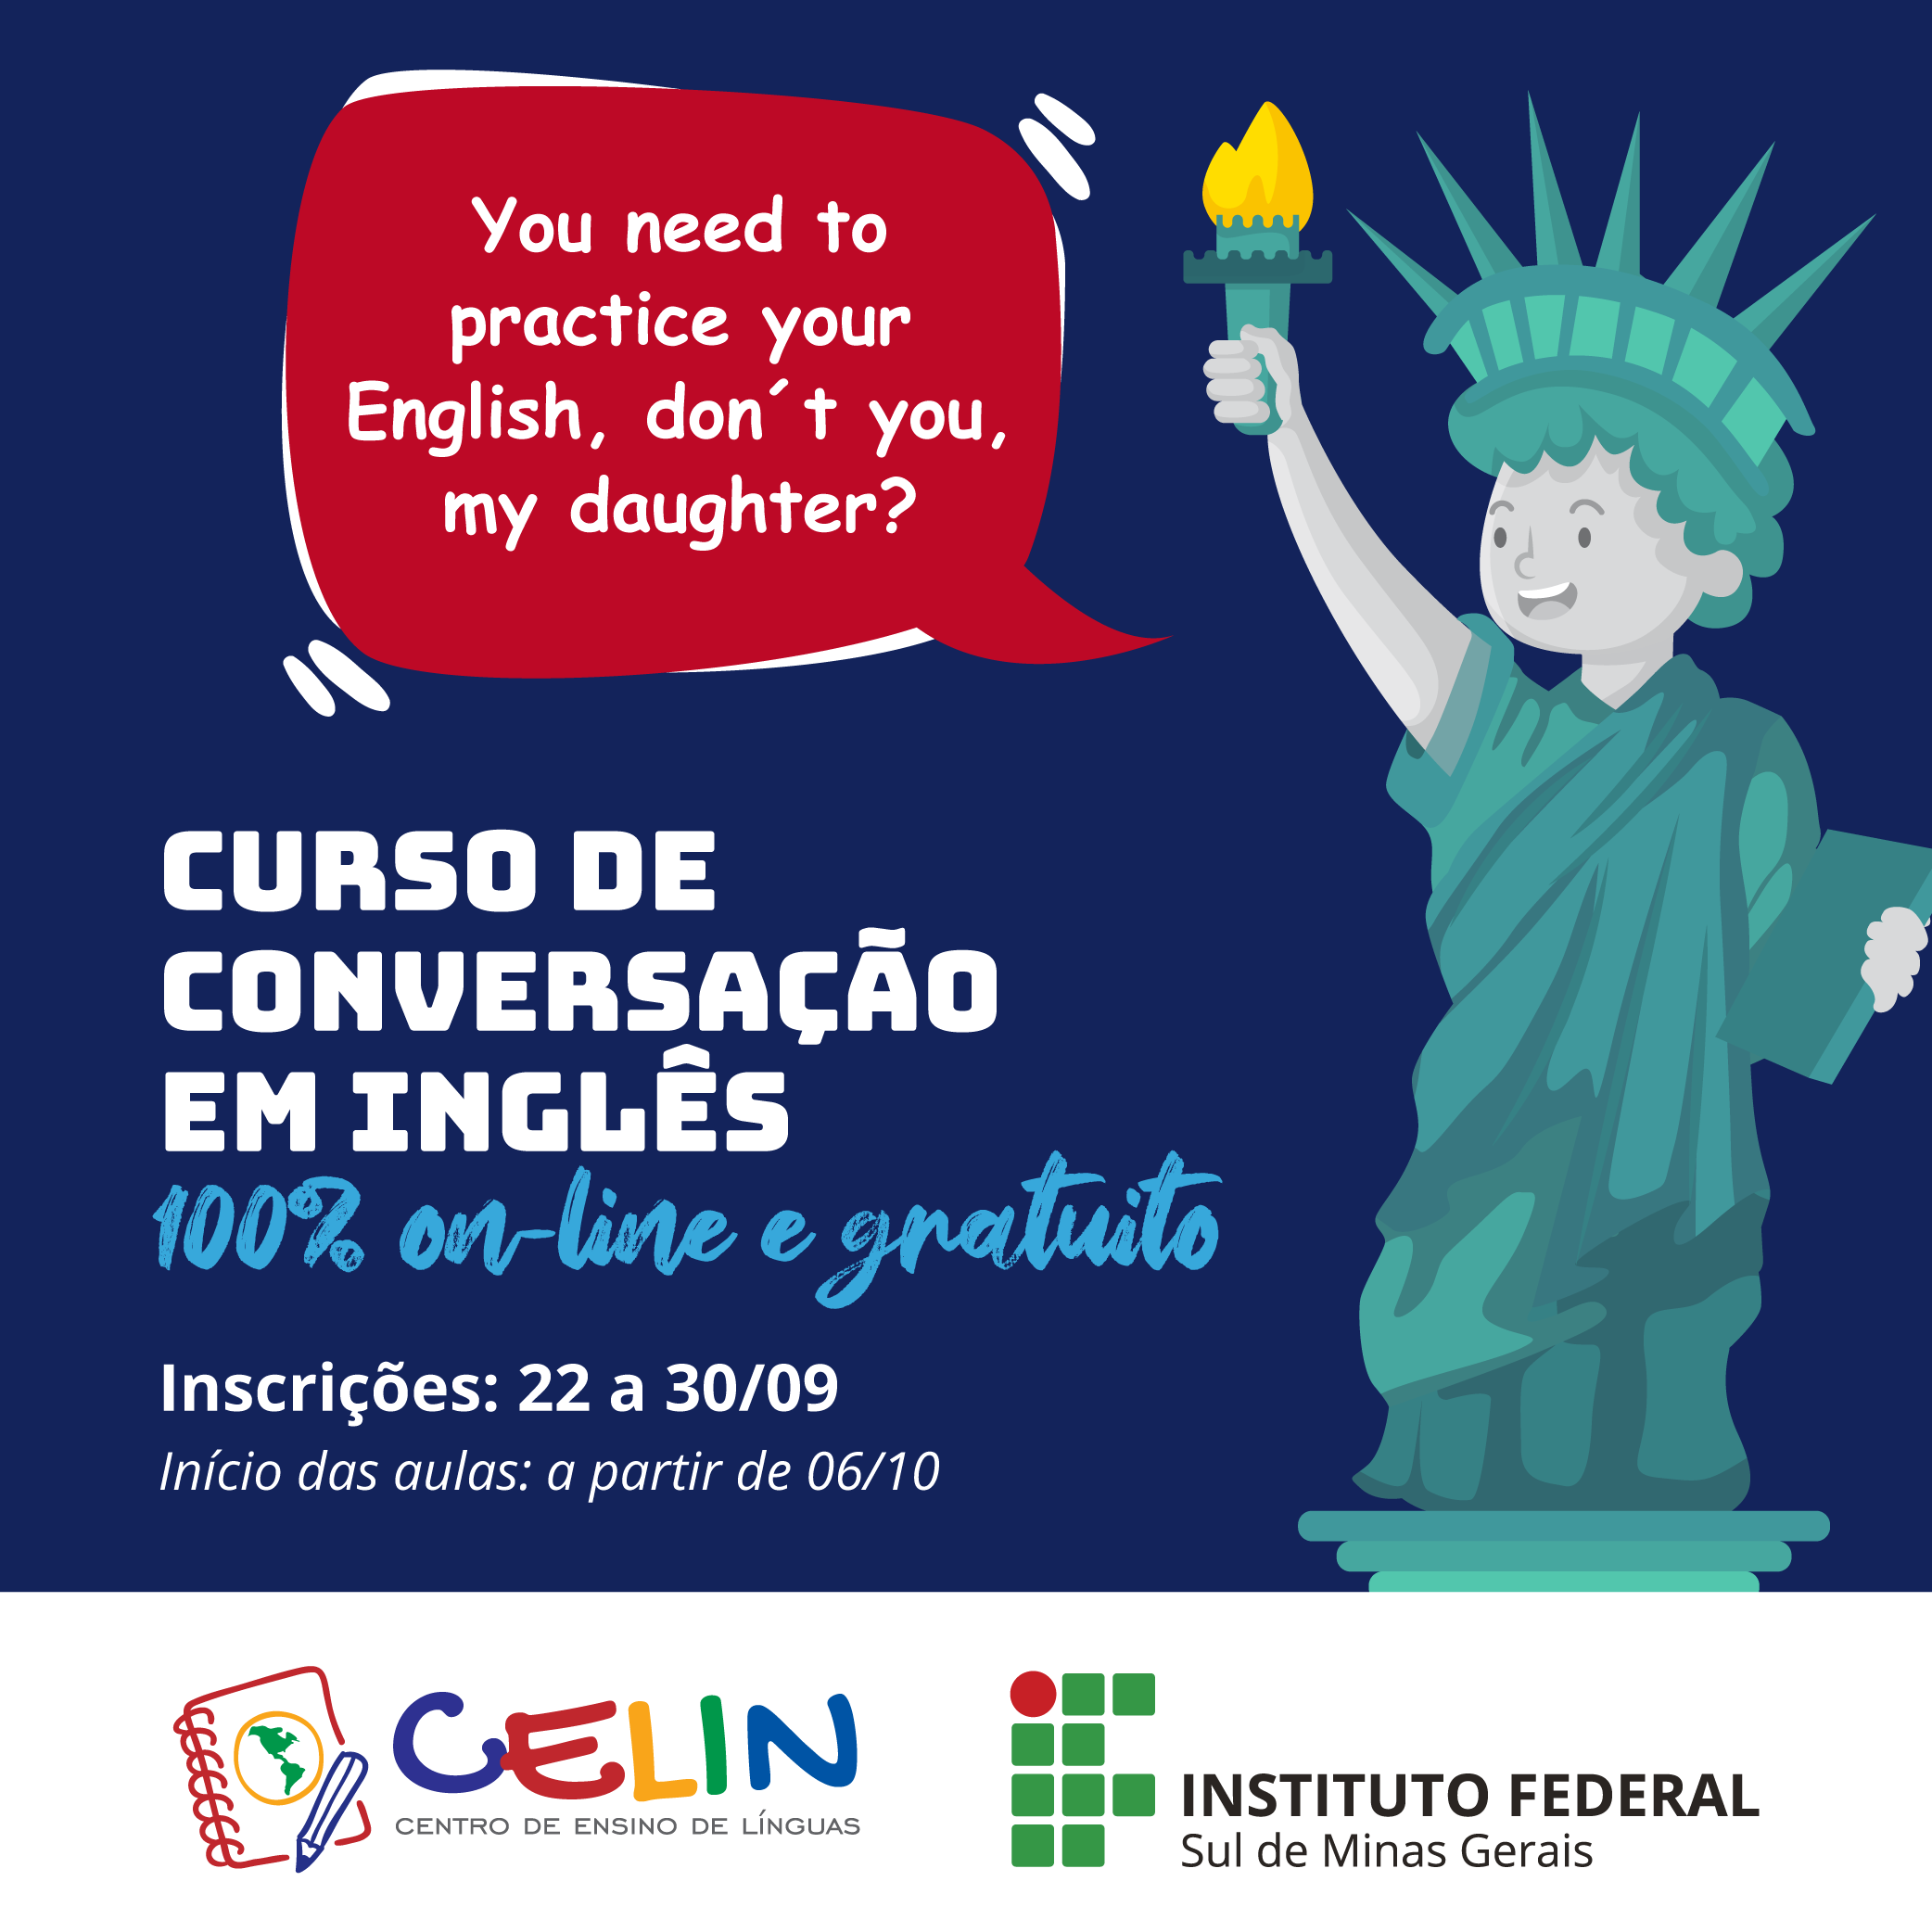 Curso Online e Gratuito de Conversação em Inglês